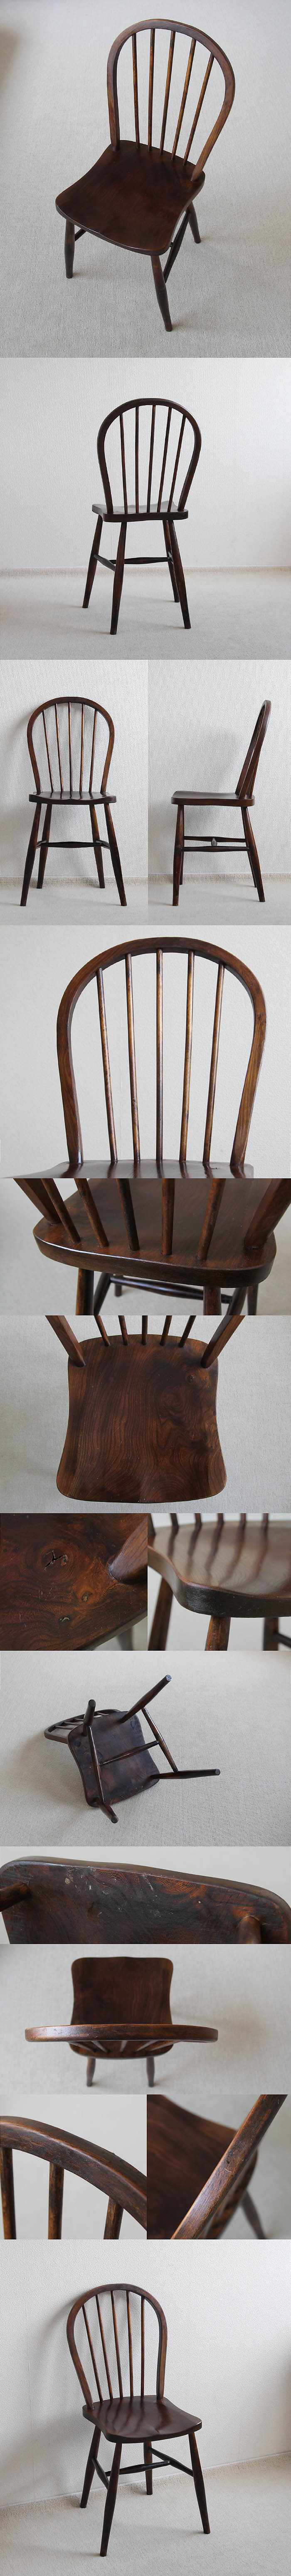 イギリス アンティーク フープバックチェア 木製椅子 家具 インテリア「一枚板座面」V-994